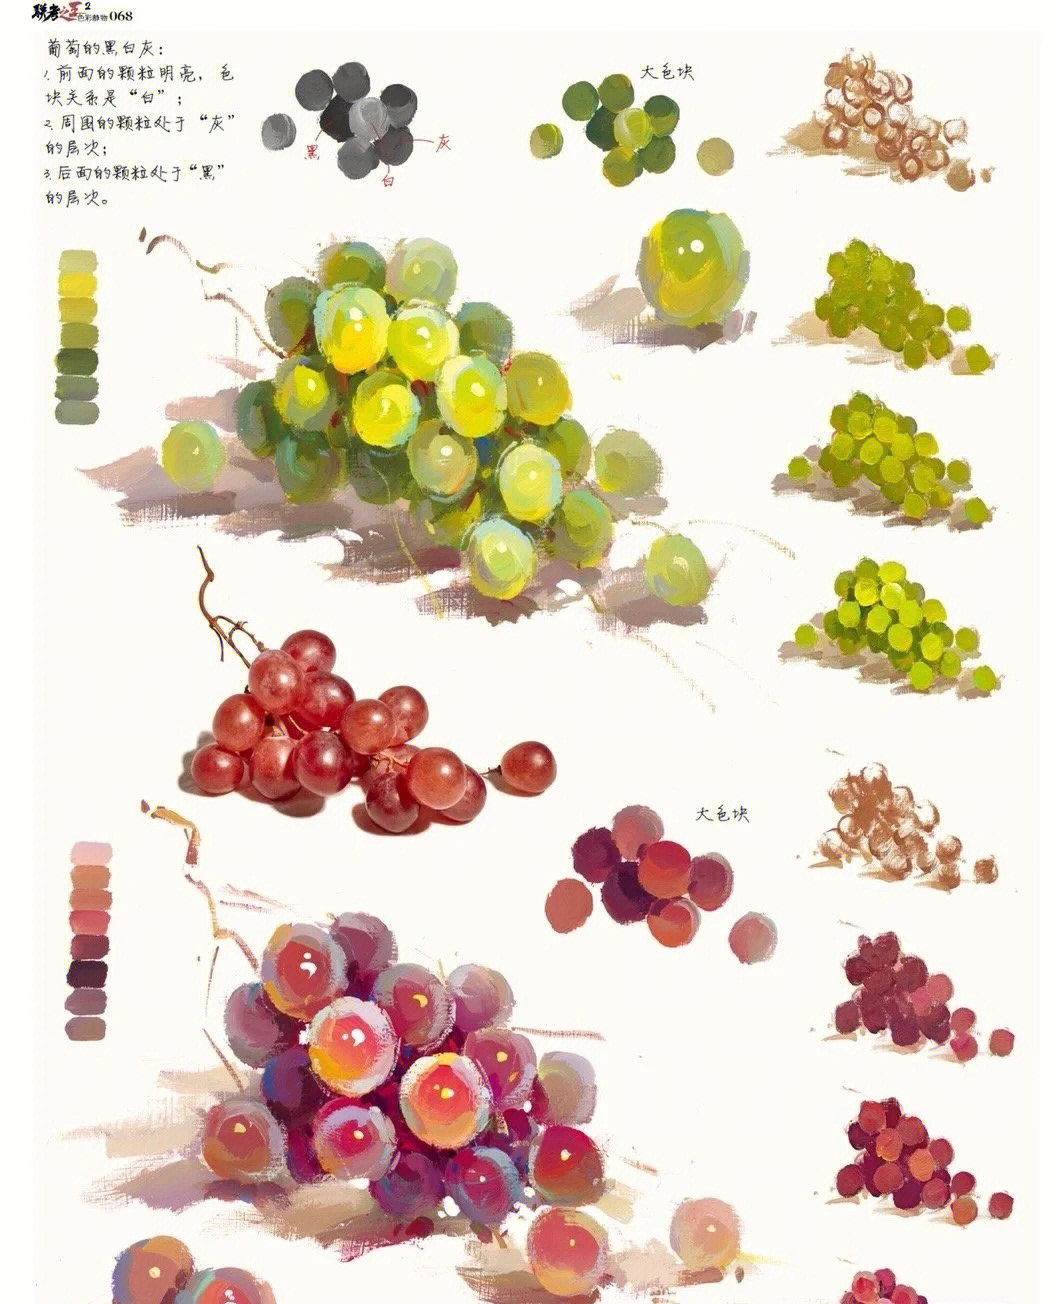 色彩静物单体葡萄含步骤图调色